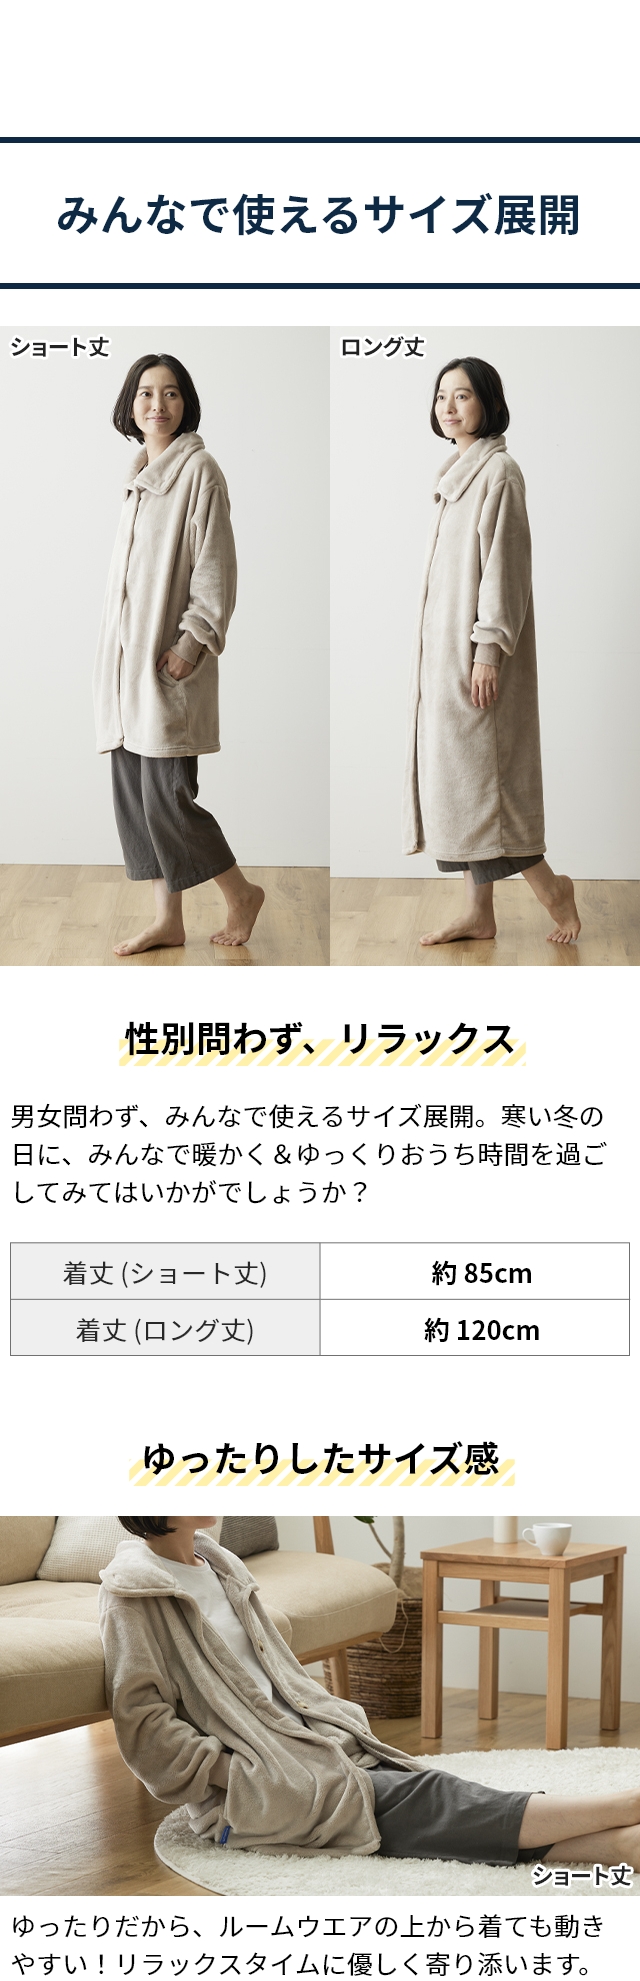 mofua (モフア) プレミアムマイクロファイバー 着る毛布 3wayハイネックタイプ FJ ショート丈85cm